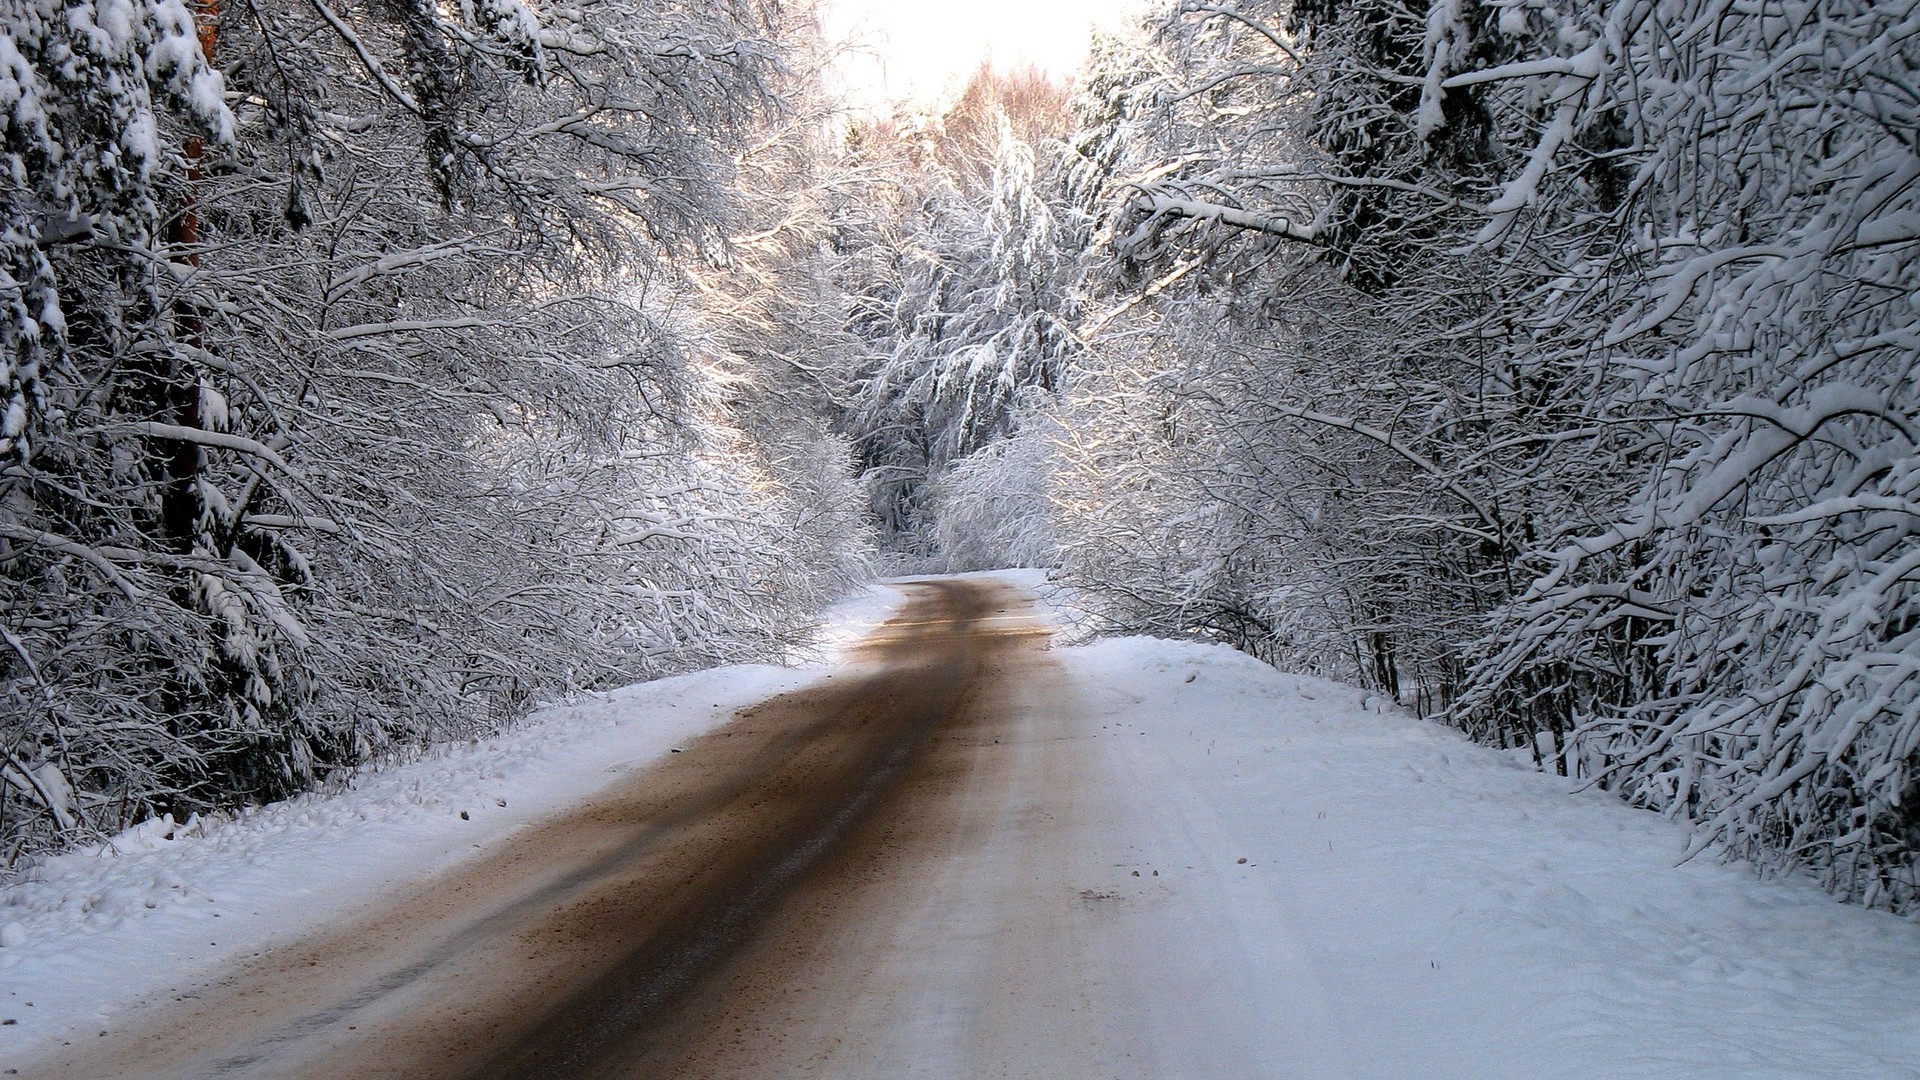 Дорога в заснеженном зимнем лесу